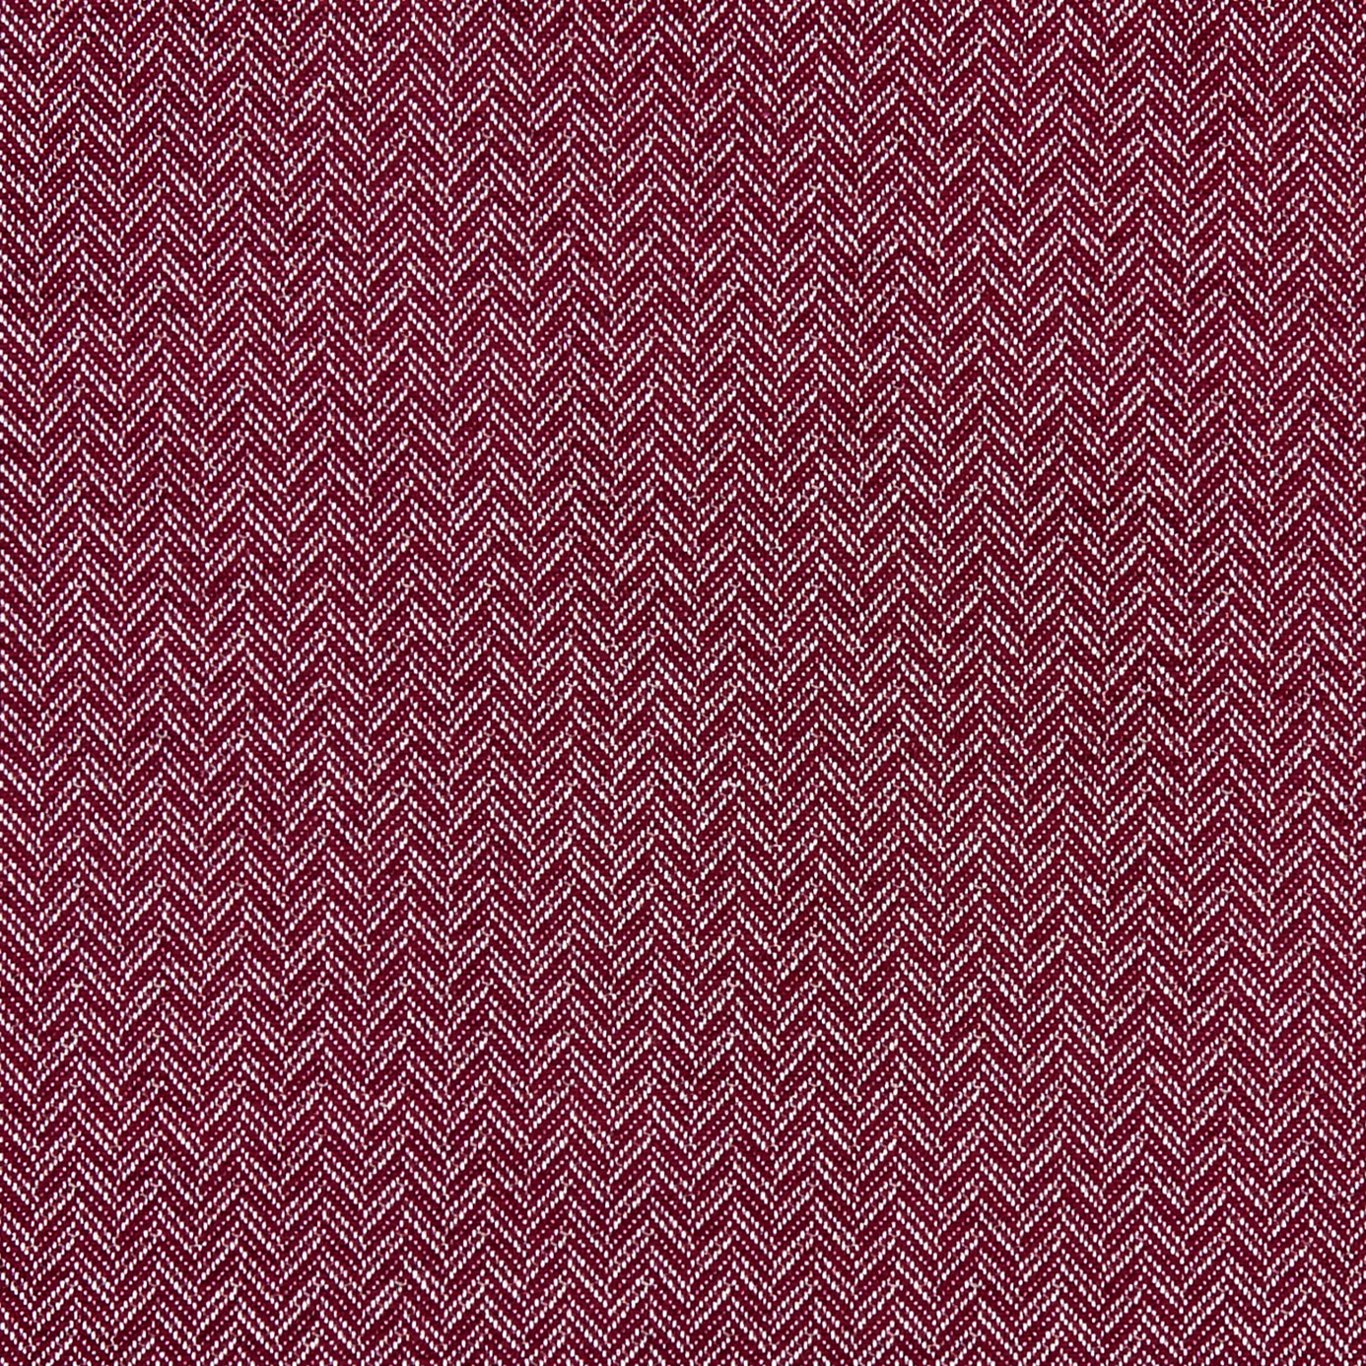 Trinity Ruby Fabric by CNC